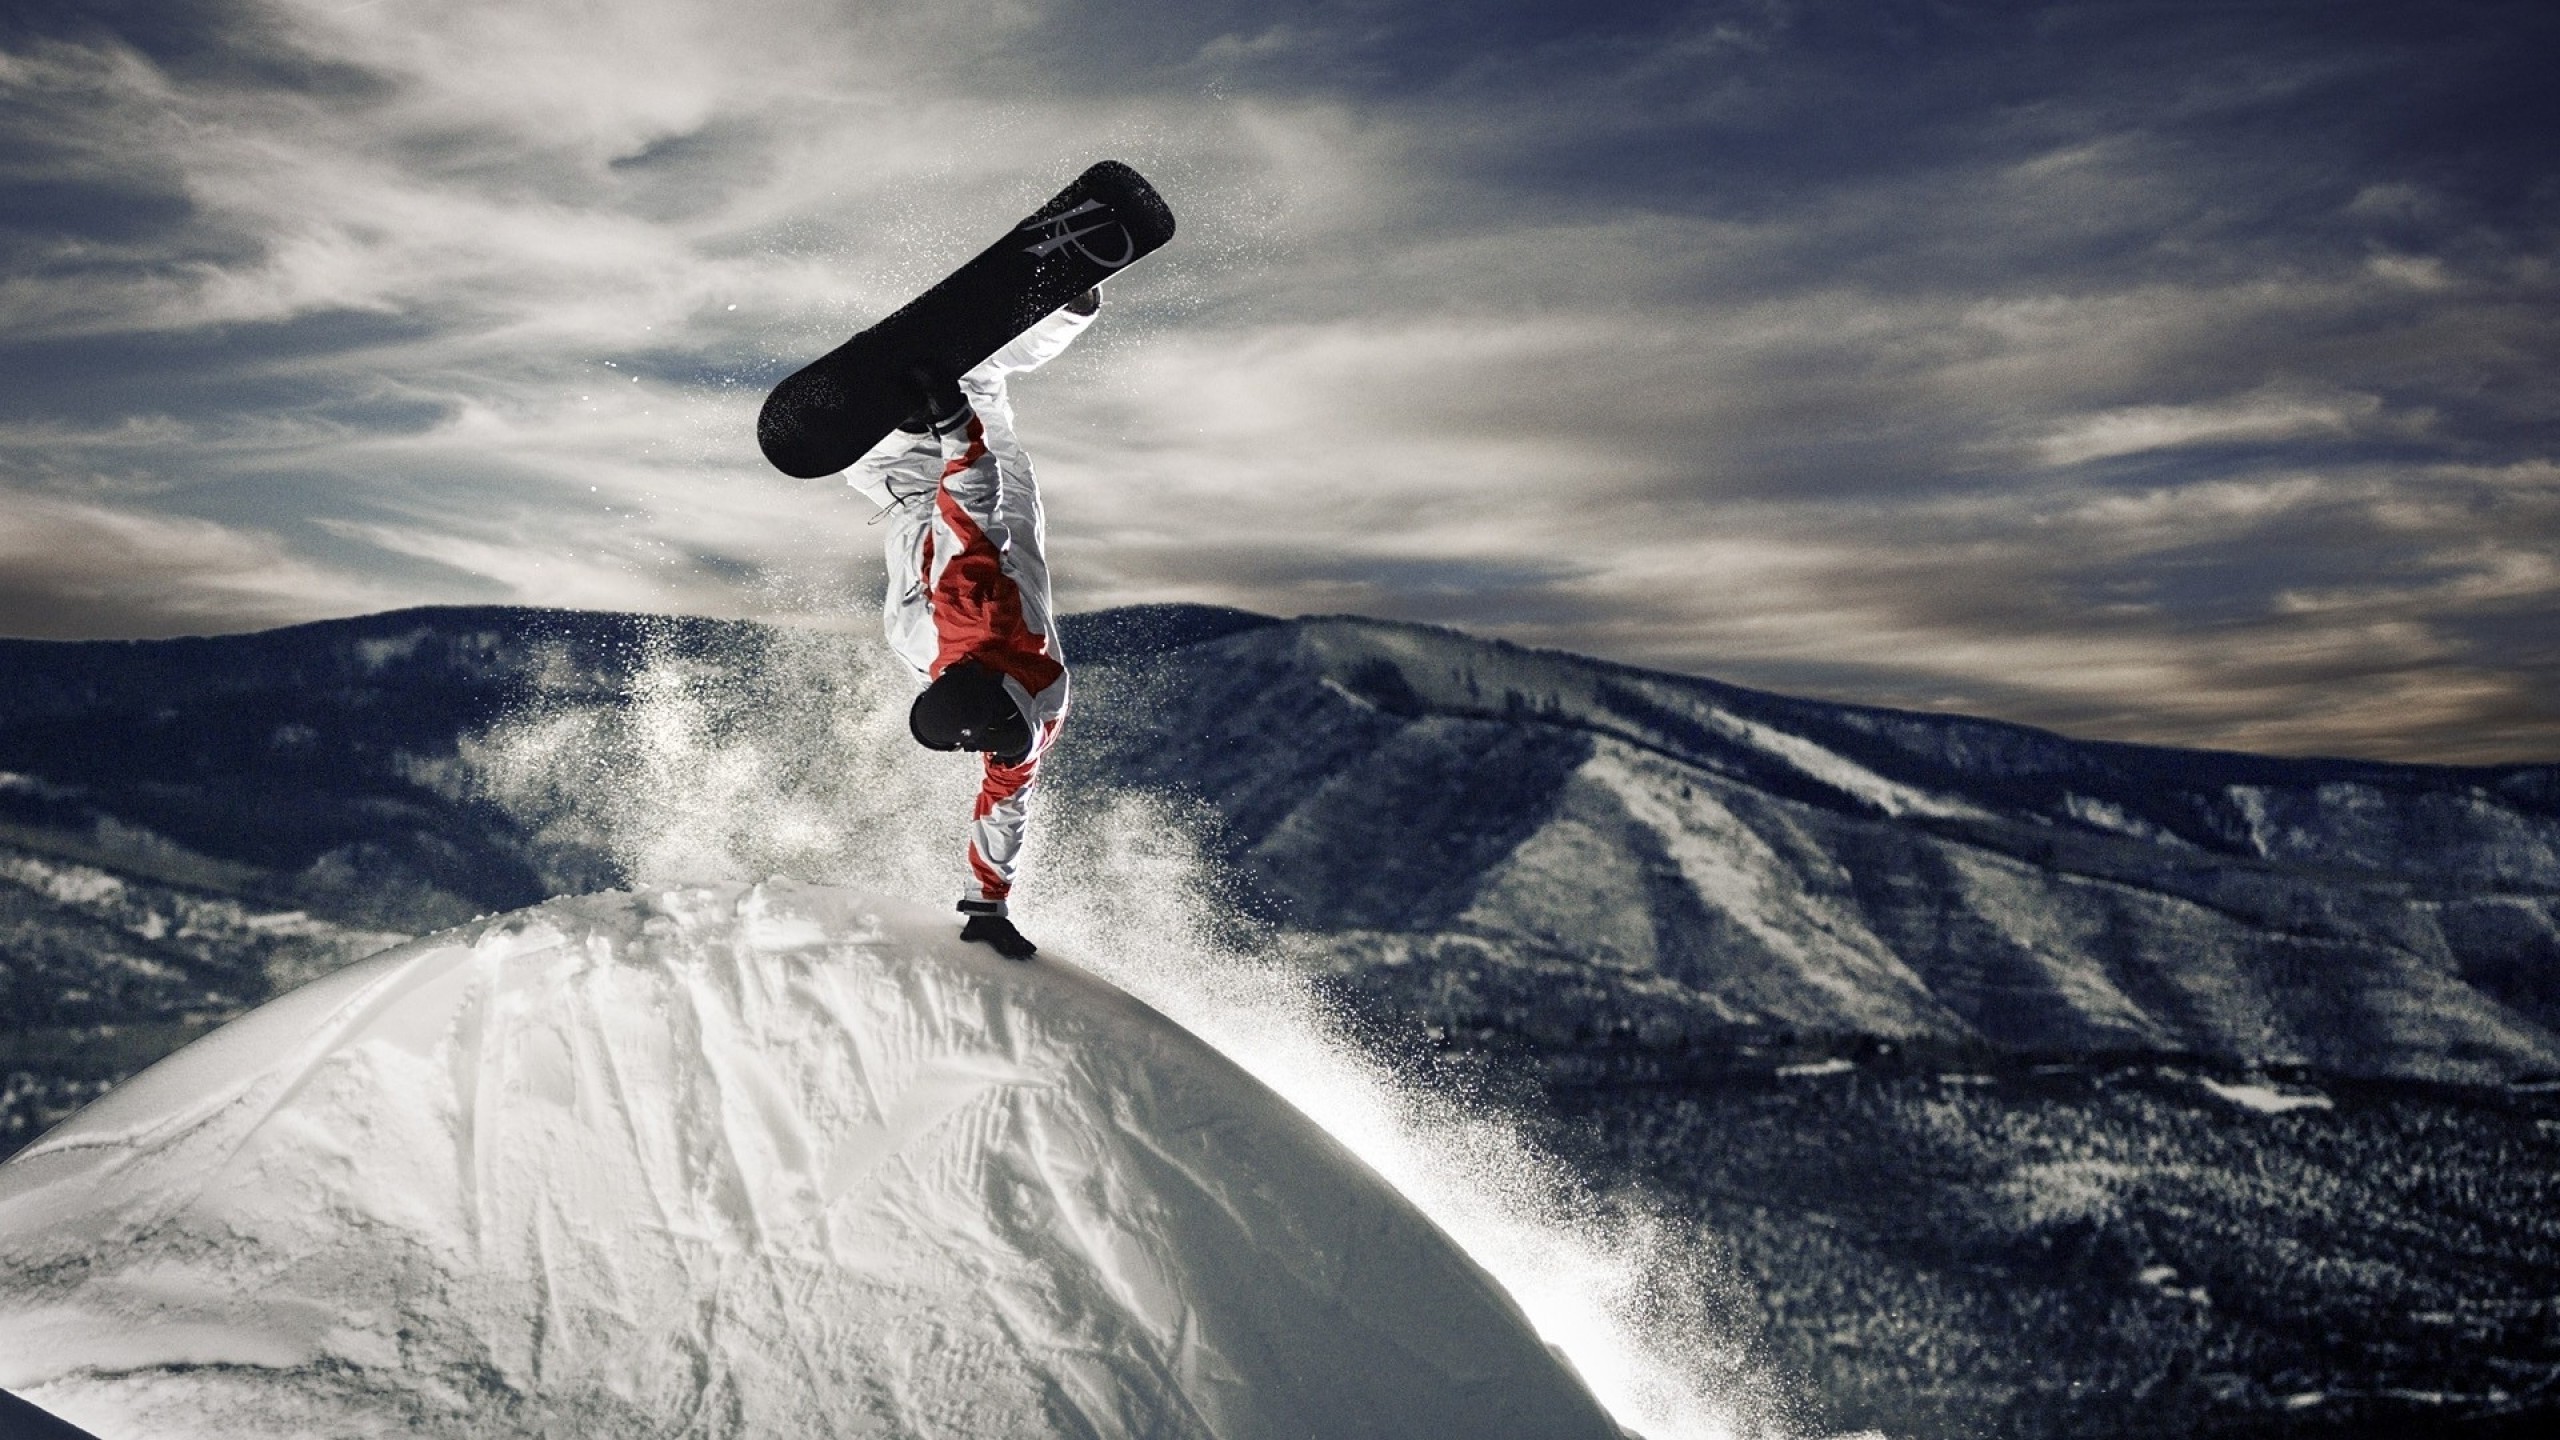 Snowboarding Wallpaper Download Best